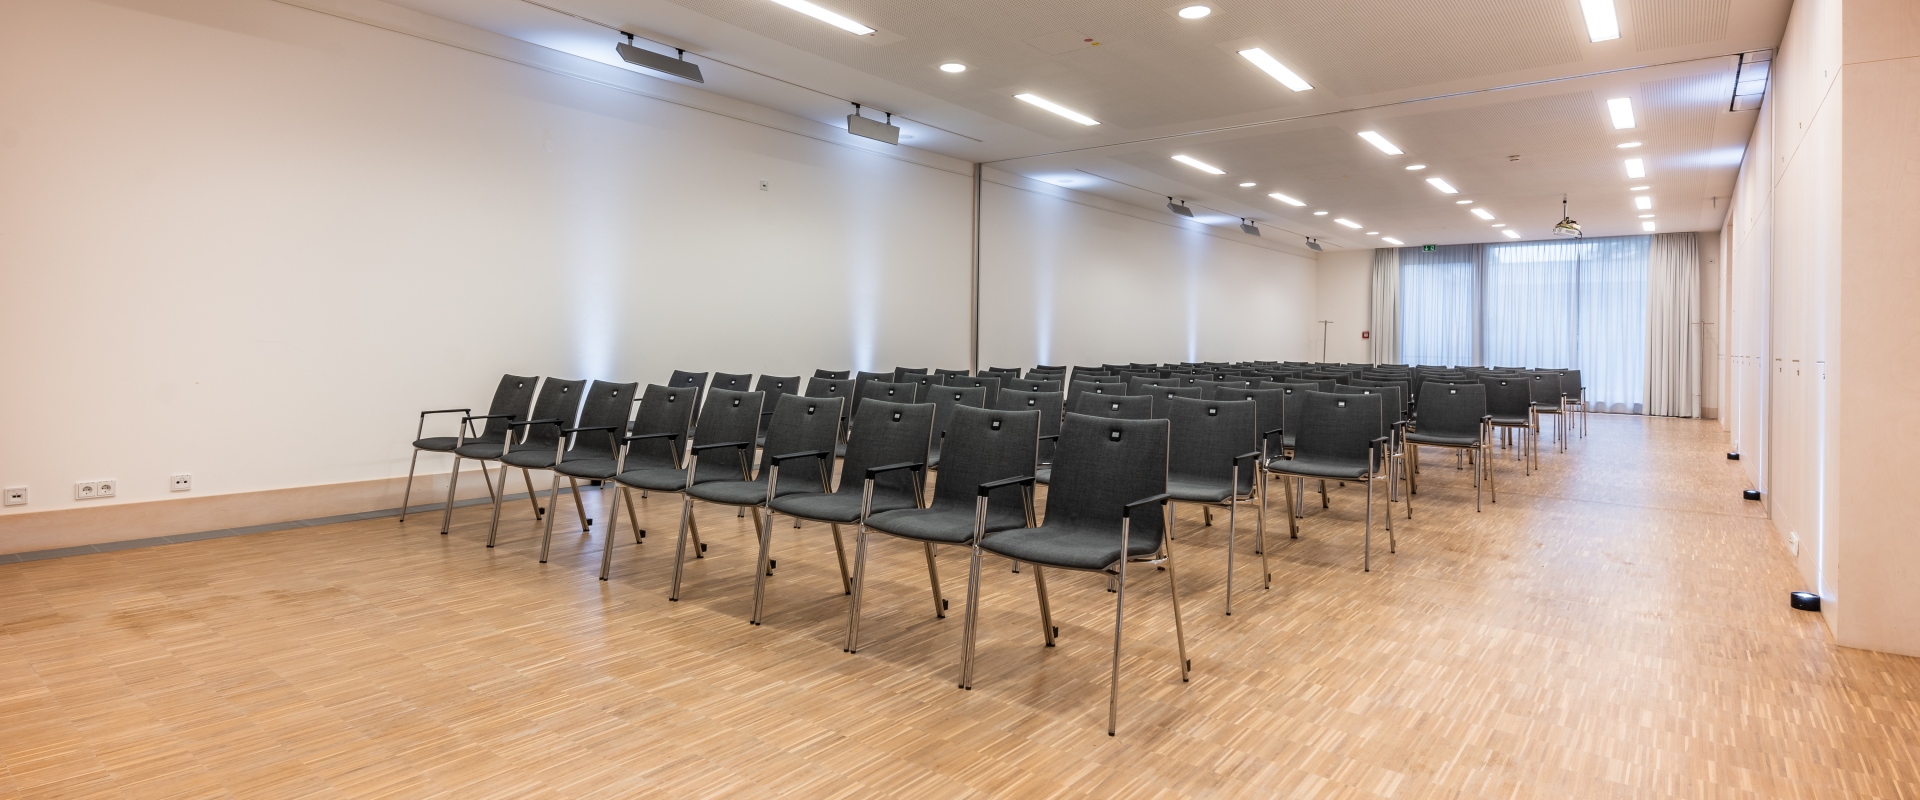 Ein Tagungsraum mit Stuhlreihen hintereinander im Forum Altötting.